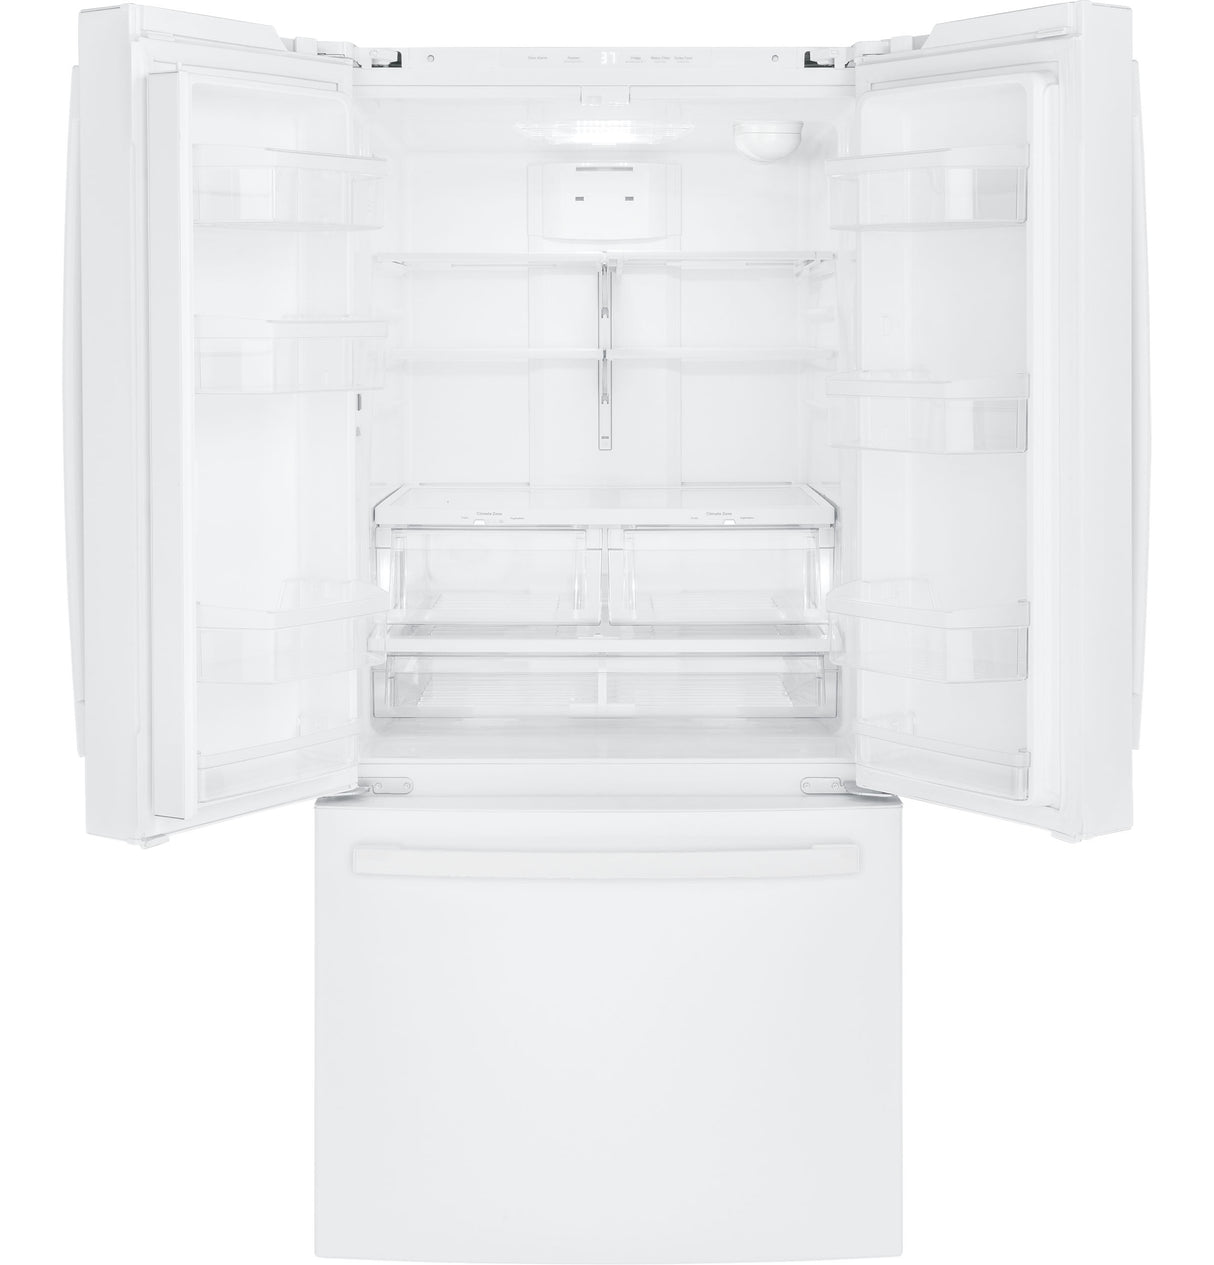 GE(R) ENERGY STAR(R) 18.6 Cu. Ft. Counter-Depth French-Door Refrigerator - (GWE19JGLWW)